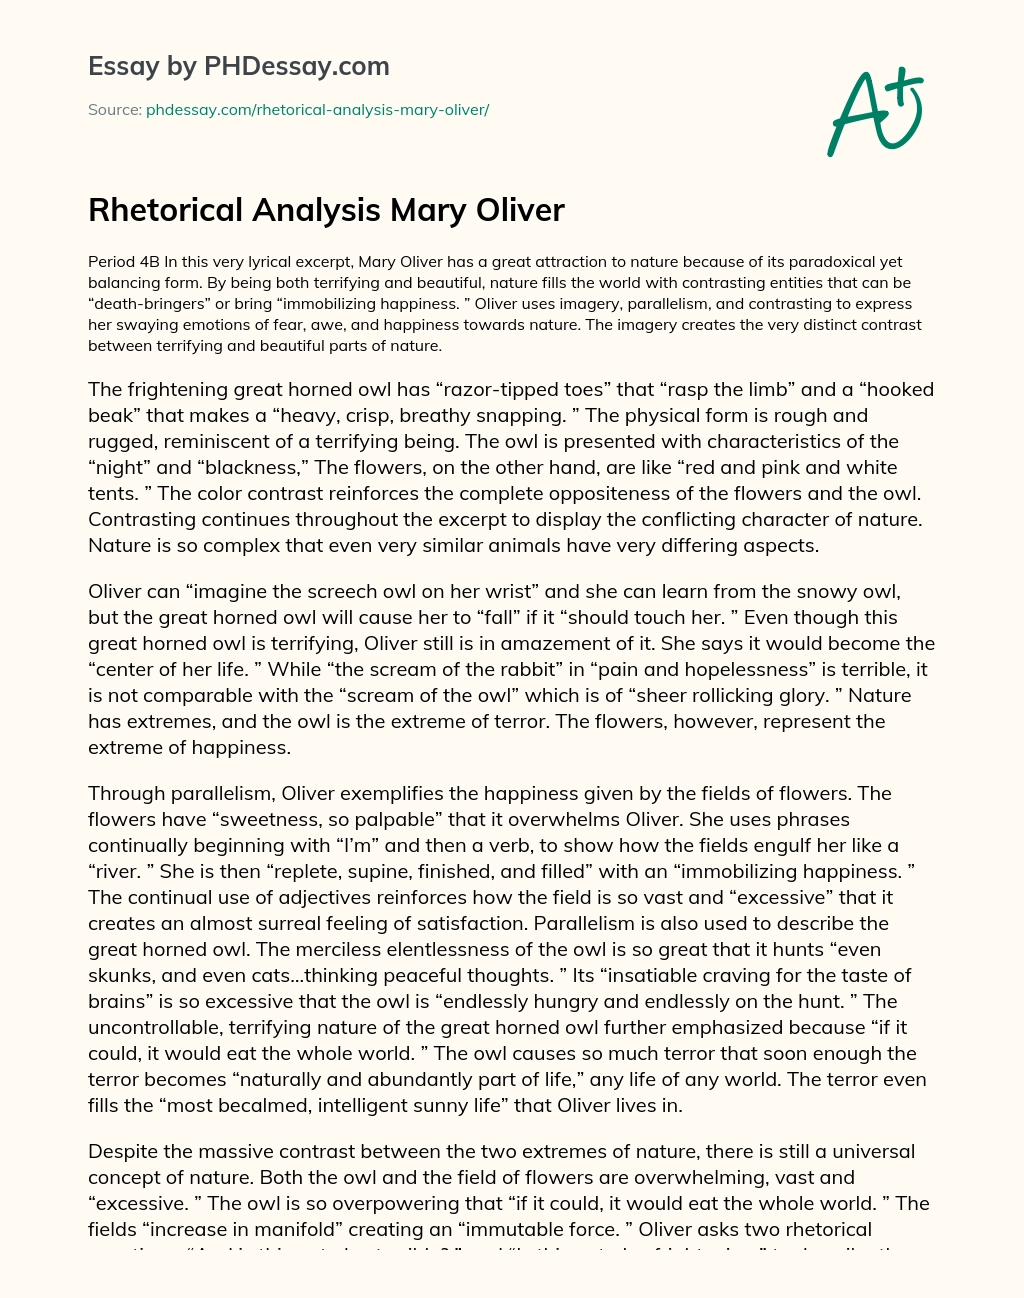 Rhetorical Analysis Mary Oliver essay